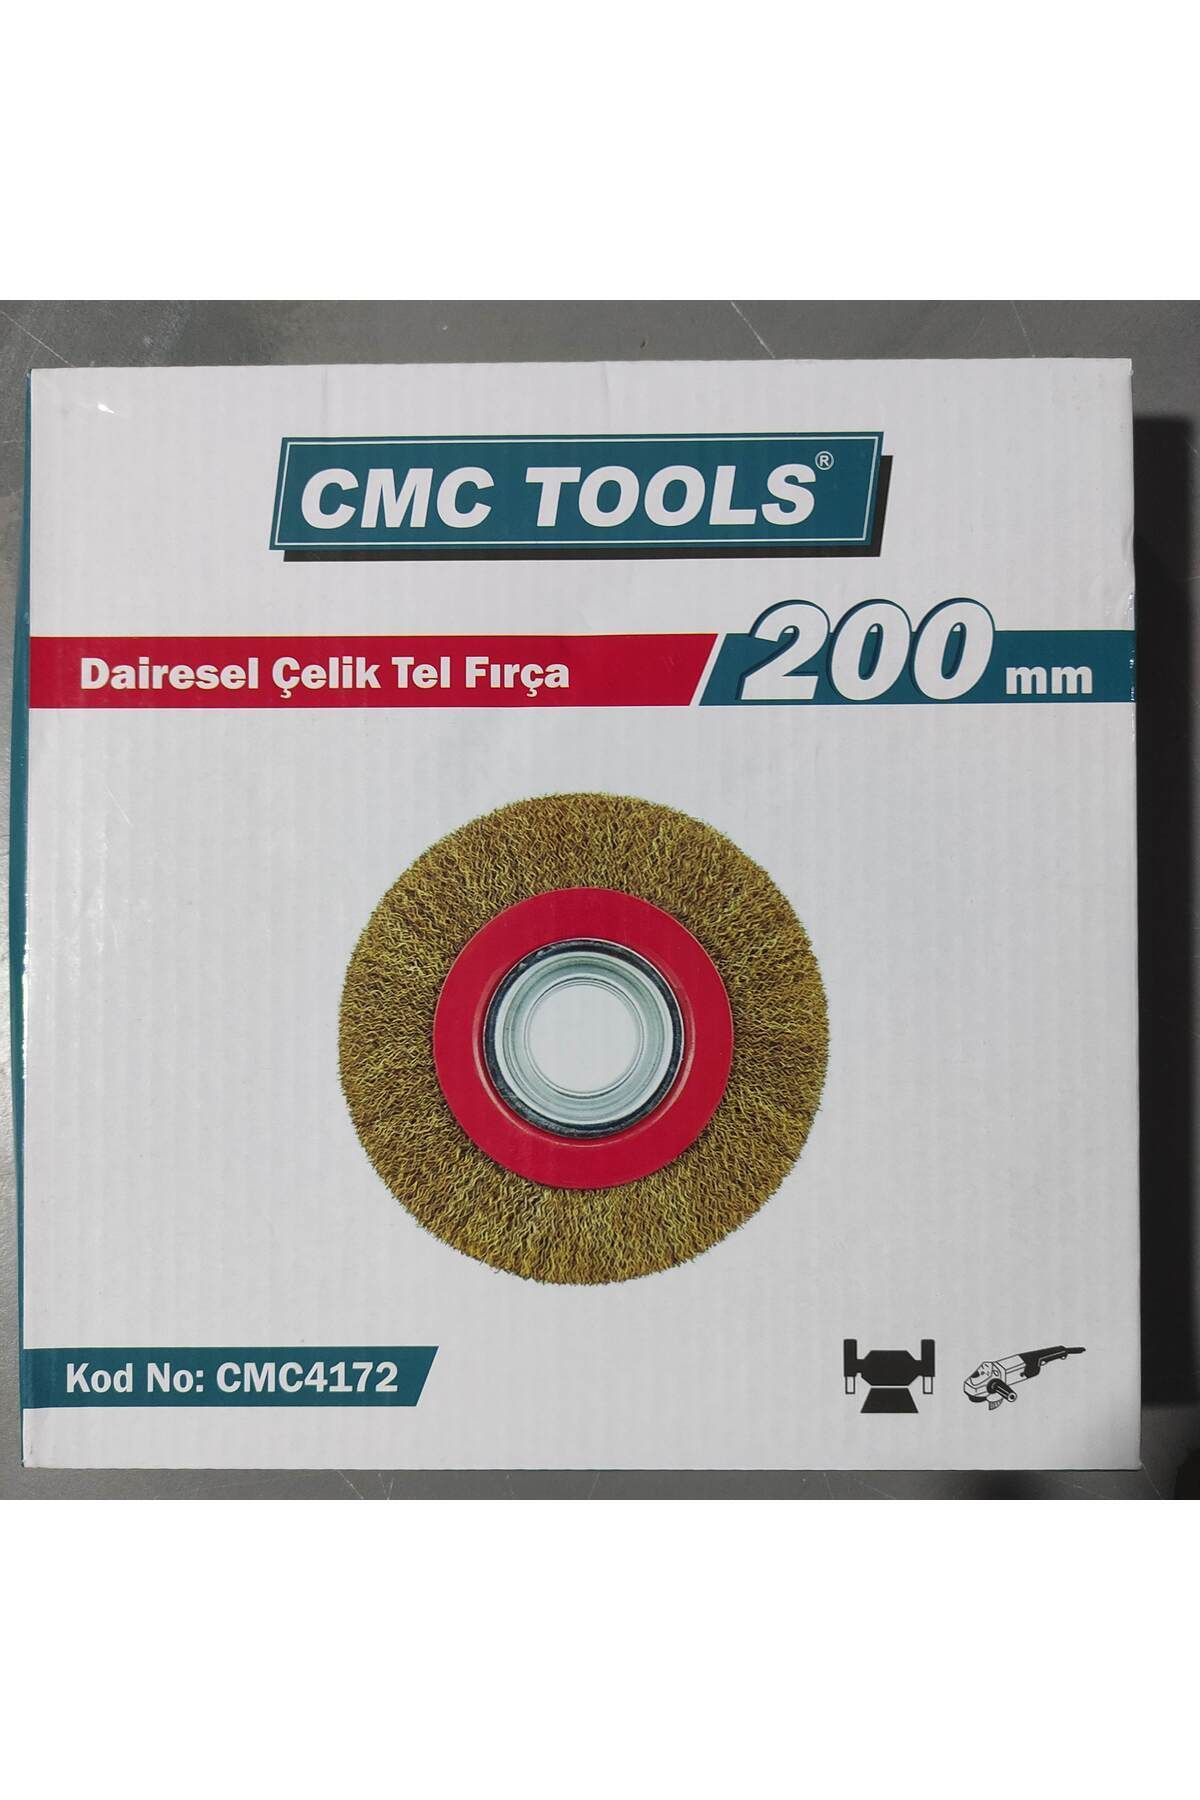 Genel Markalar Dairesel Çelik Tel Fırça 200 Mm 1 Adet Kod Cmc 4172